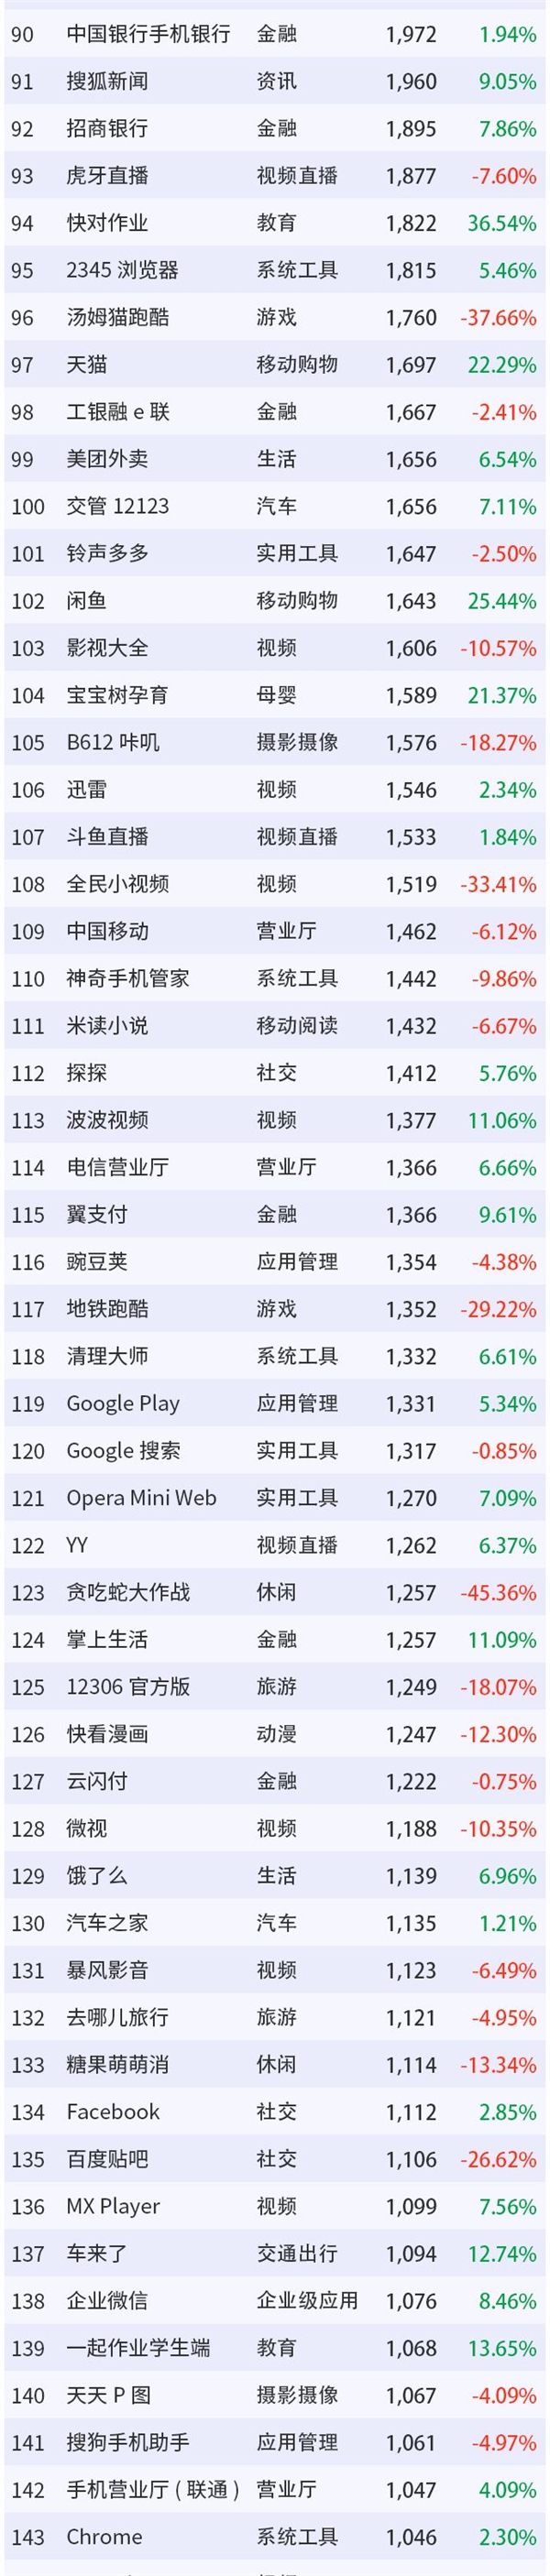 3月移动互联网App排行榜TOP200：微信第一 支付宝第二